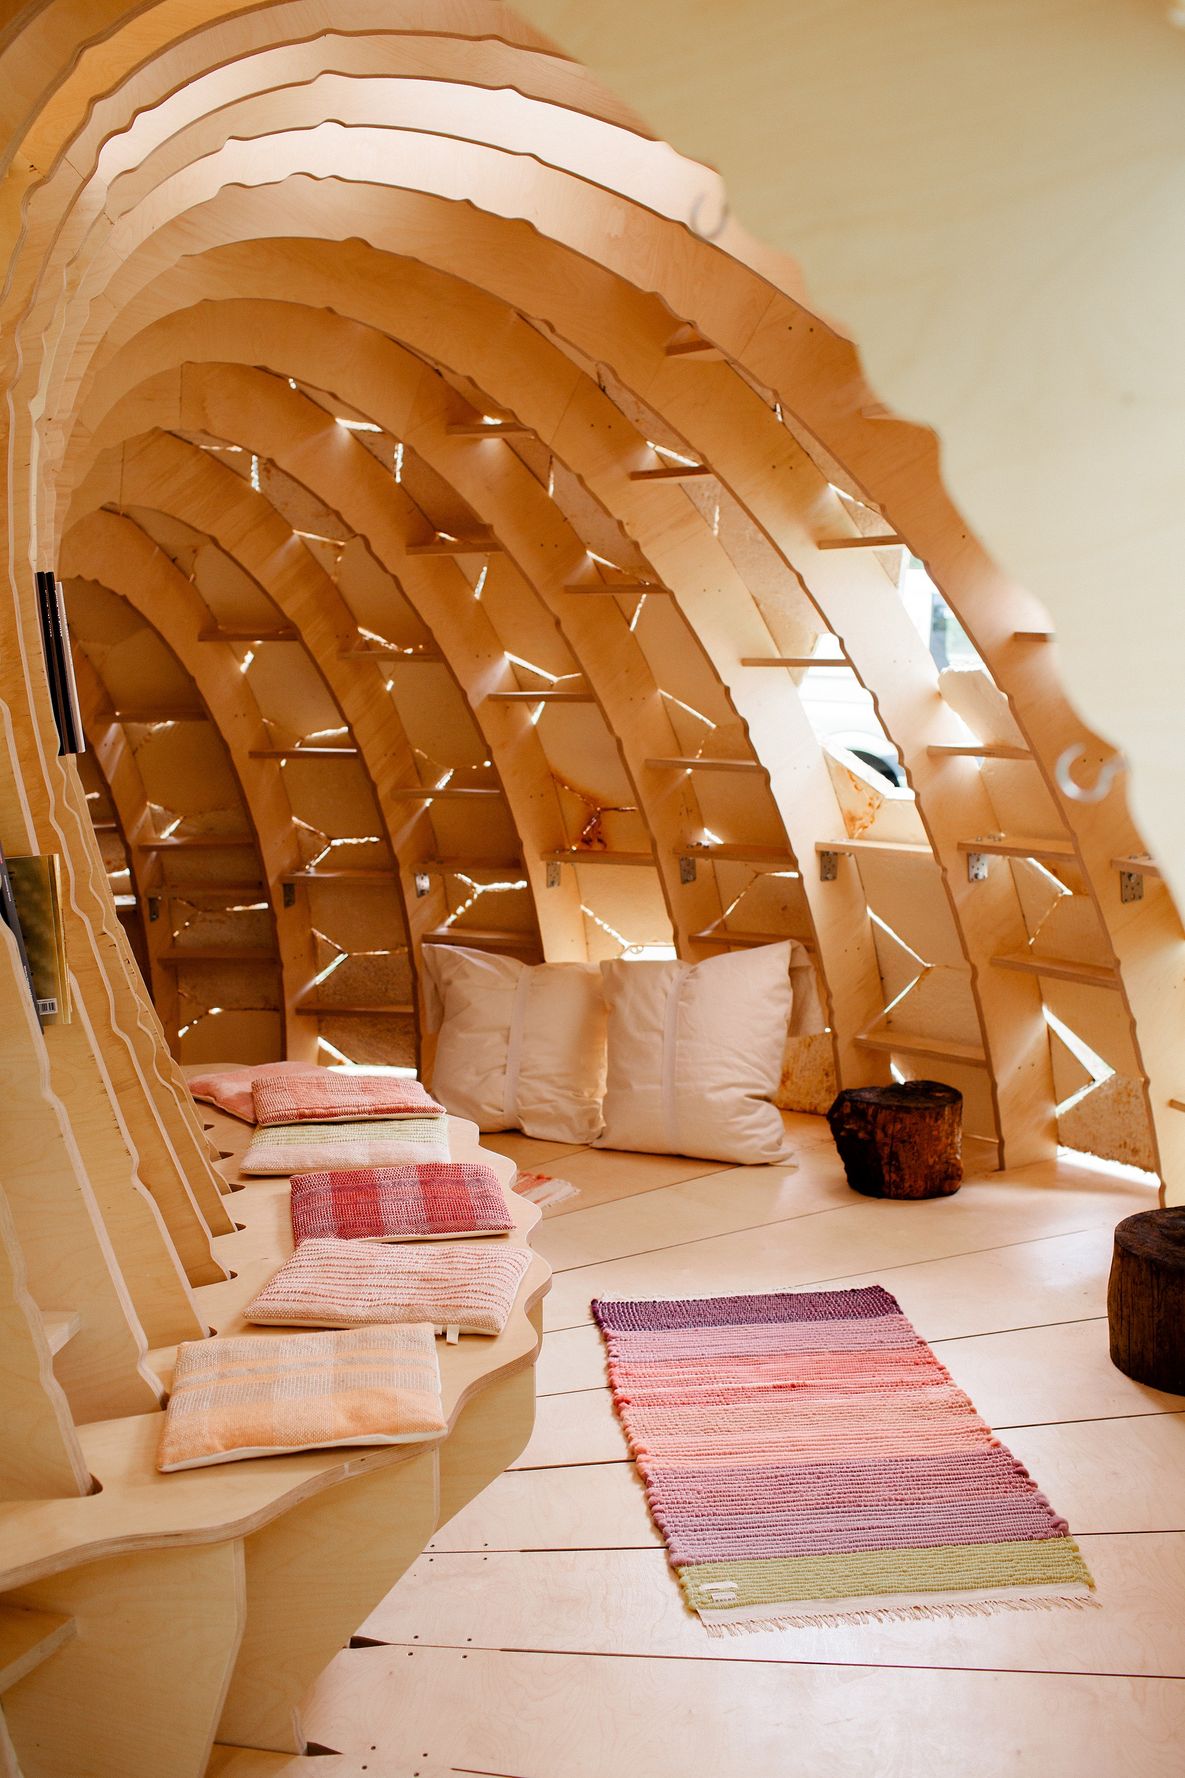 Foto: Blick in einen höhlenförmigen, halbrunden Bau aus Holz mit Sitzbank, einem Teppich und Kissen. Von außen strömt durch Spalten Tageslicht nach innen.